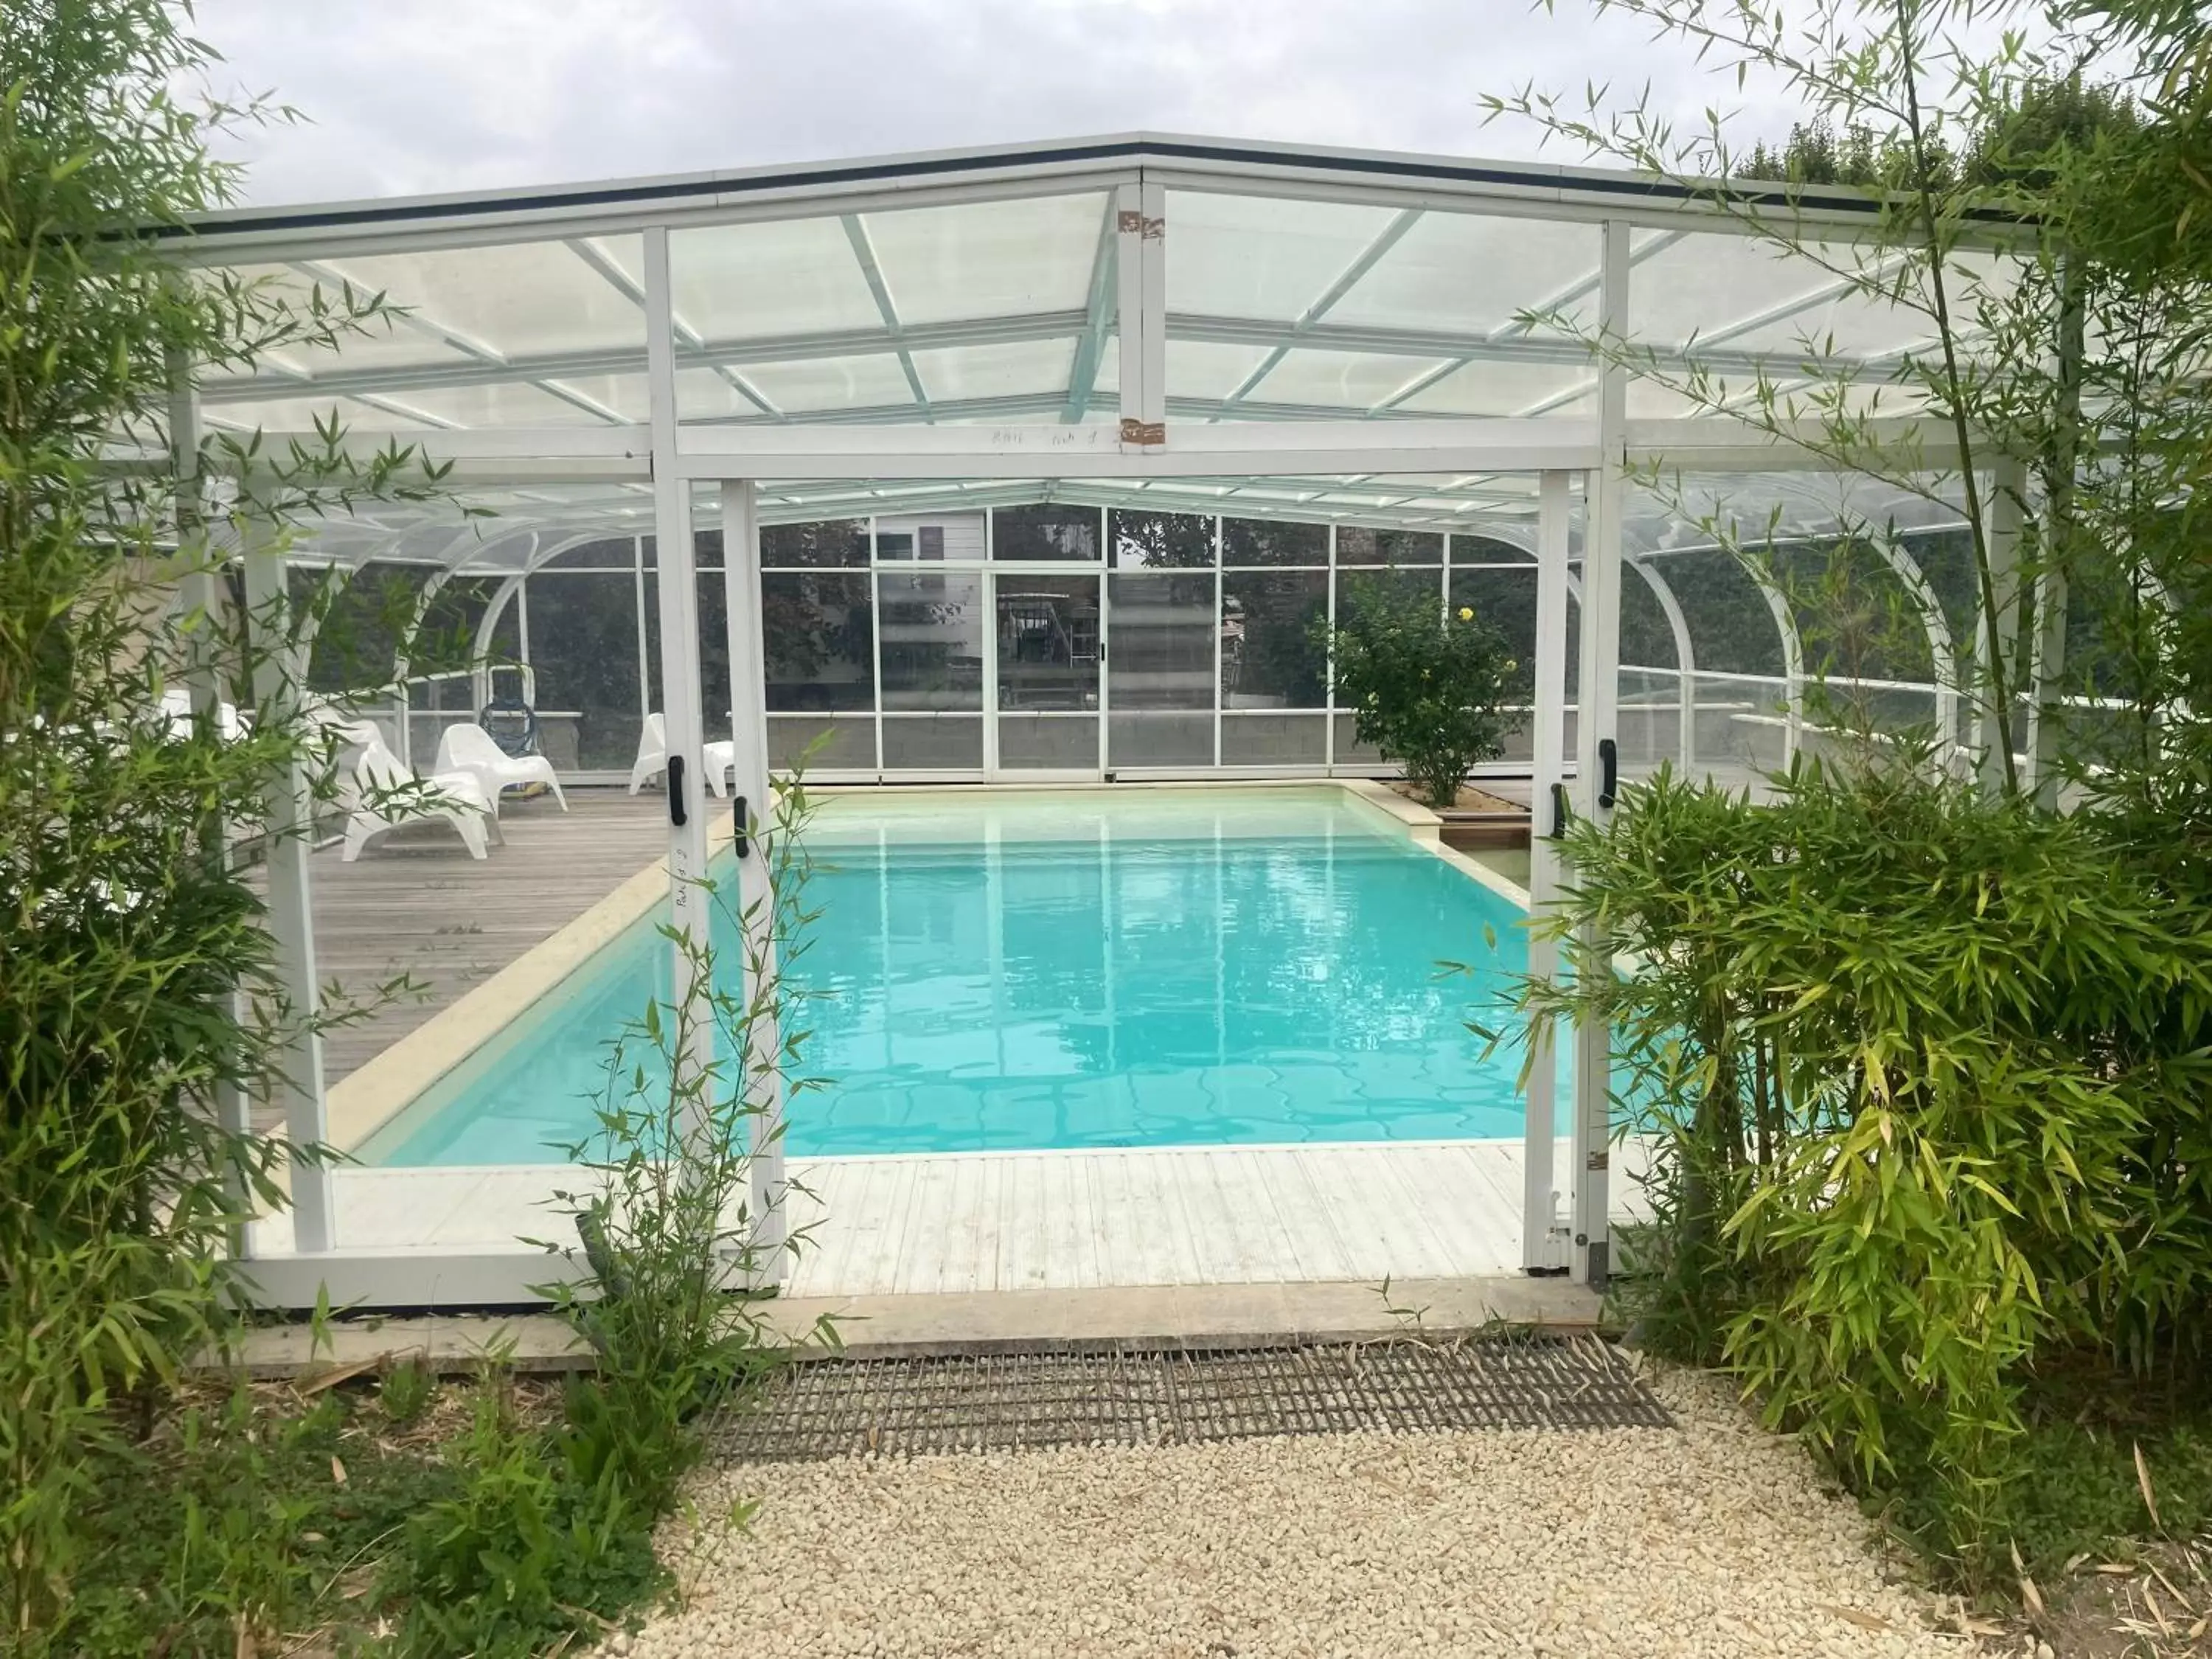 Swimming Pool in Les Pierres D'aurèle Chambres d'Hôtes